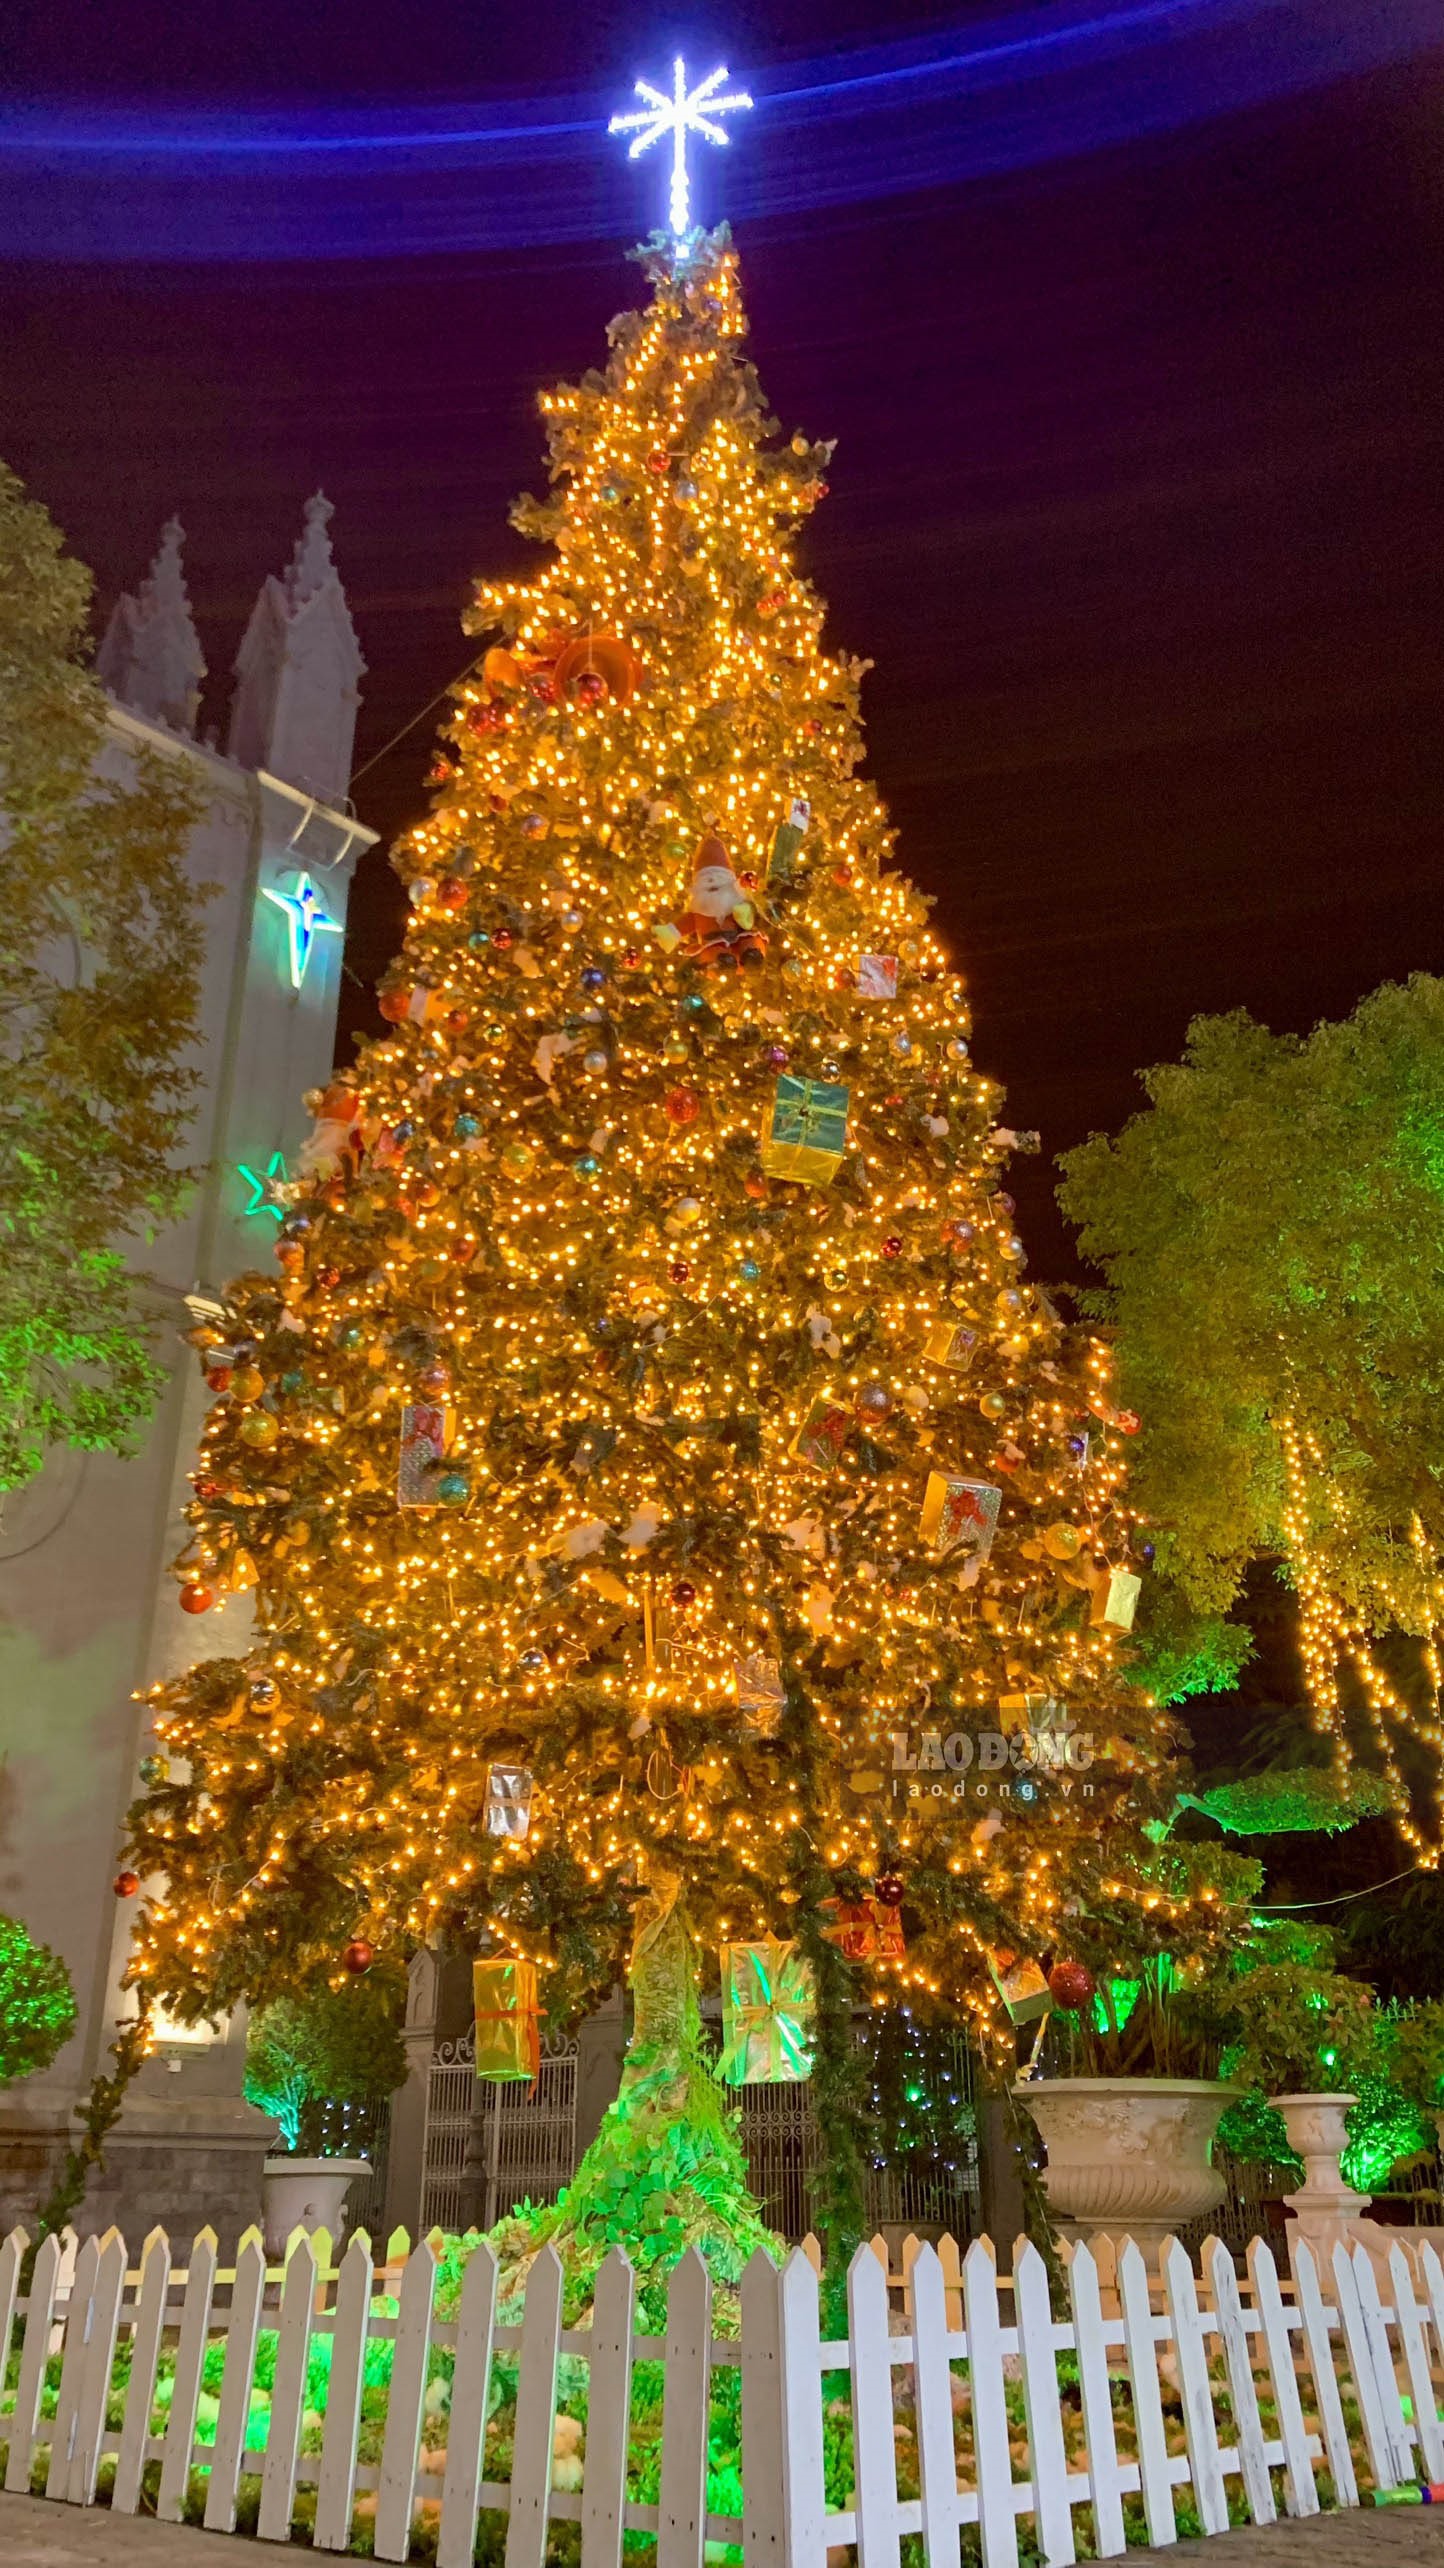 Bạn đã sẵn sàng cho một mùa Giáng sinh đầy màu sắc và ấm áp với cây thông đón Giáng sinh độc đáo? Mời bạn đến chiêm ngưỡng hình ảnh cây thông đón Giáng sinh tràn đầy những đèn LED lung linh và hình ảnh ông già Noel vô cùng đáng yêu.